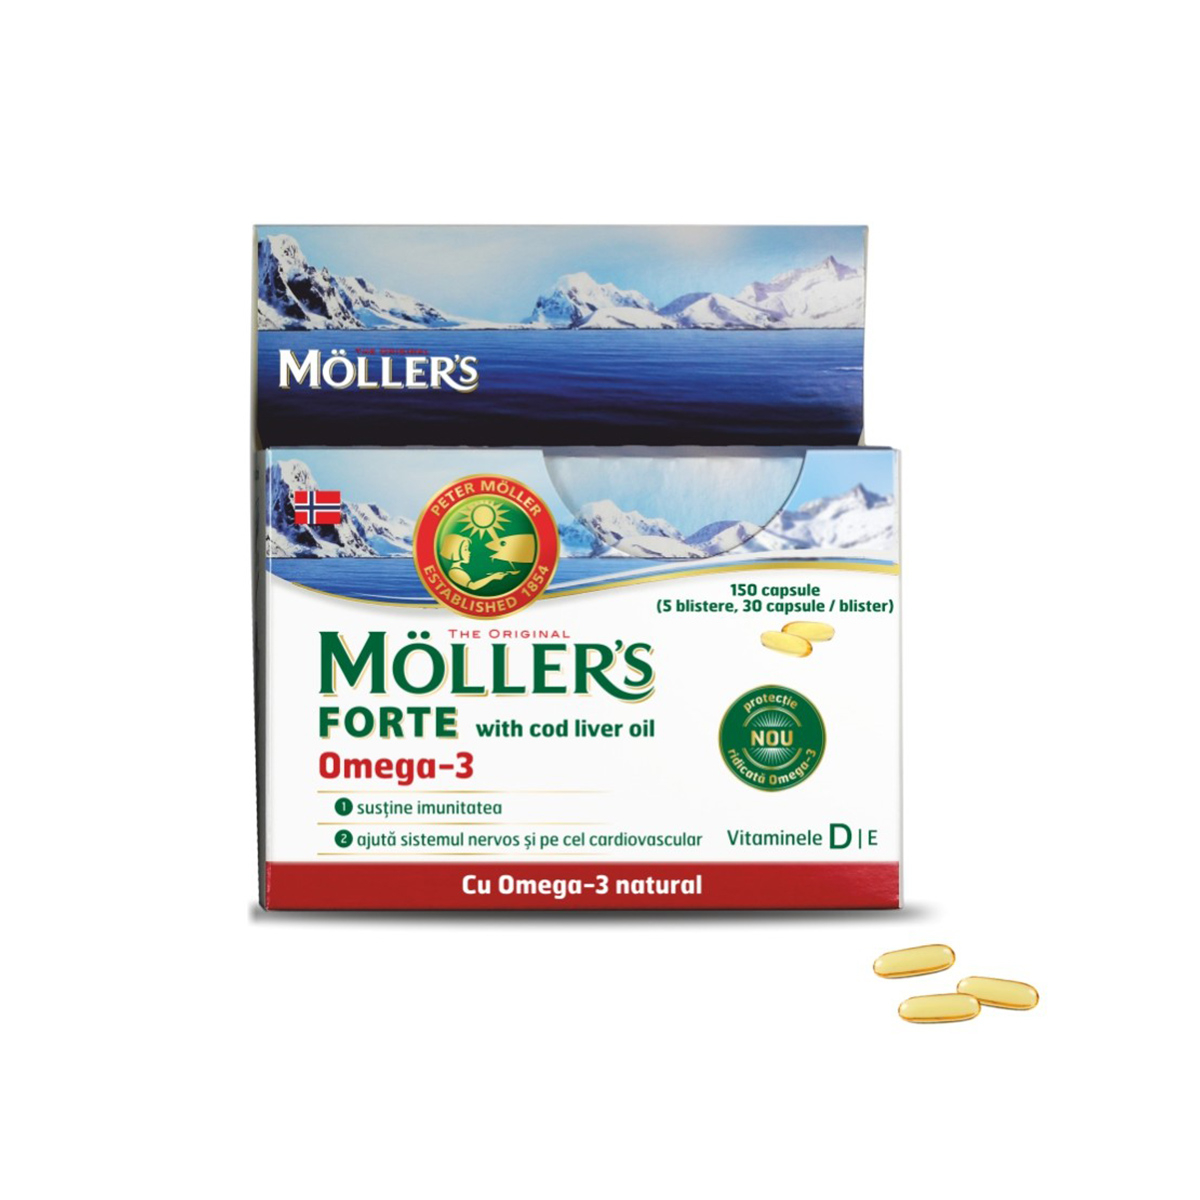 Omega 3 Forte, 150 capsule cu ulei de ficat de cod, Moller's